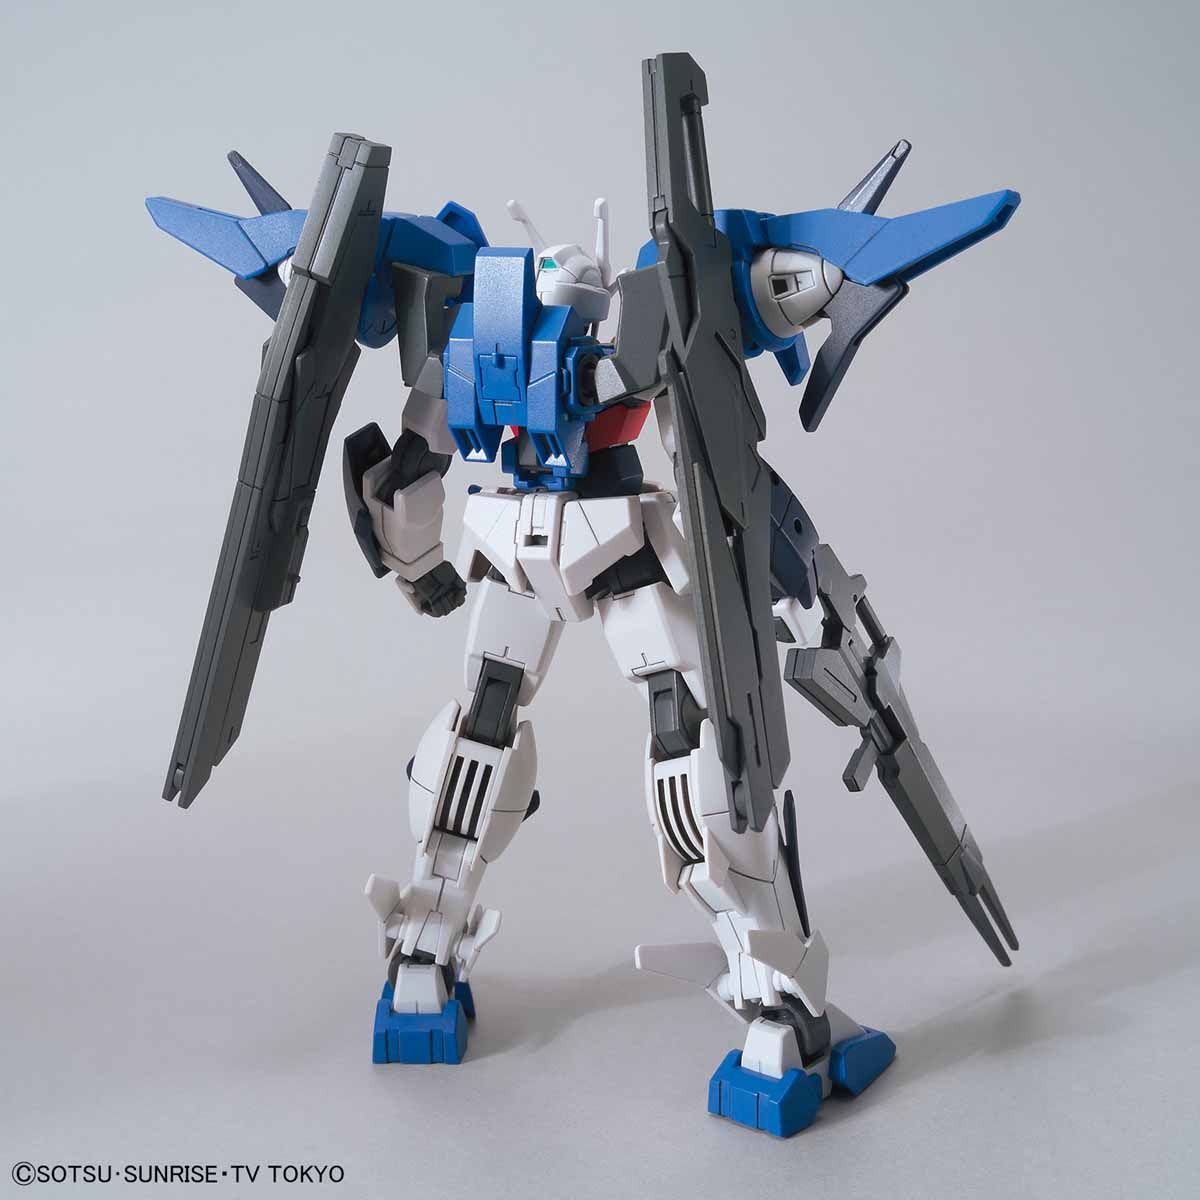 HGBD - GN-0000DVR/S Gundam 00 Sky